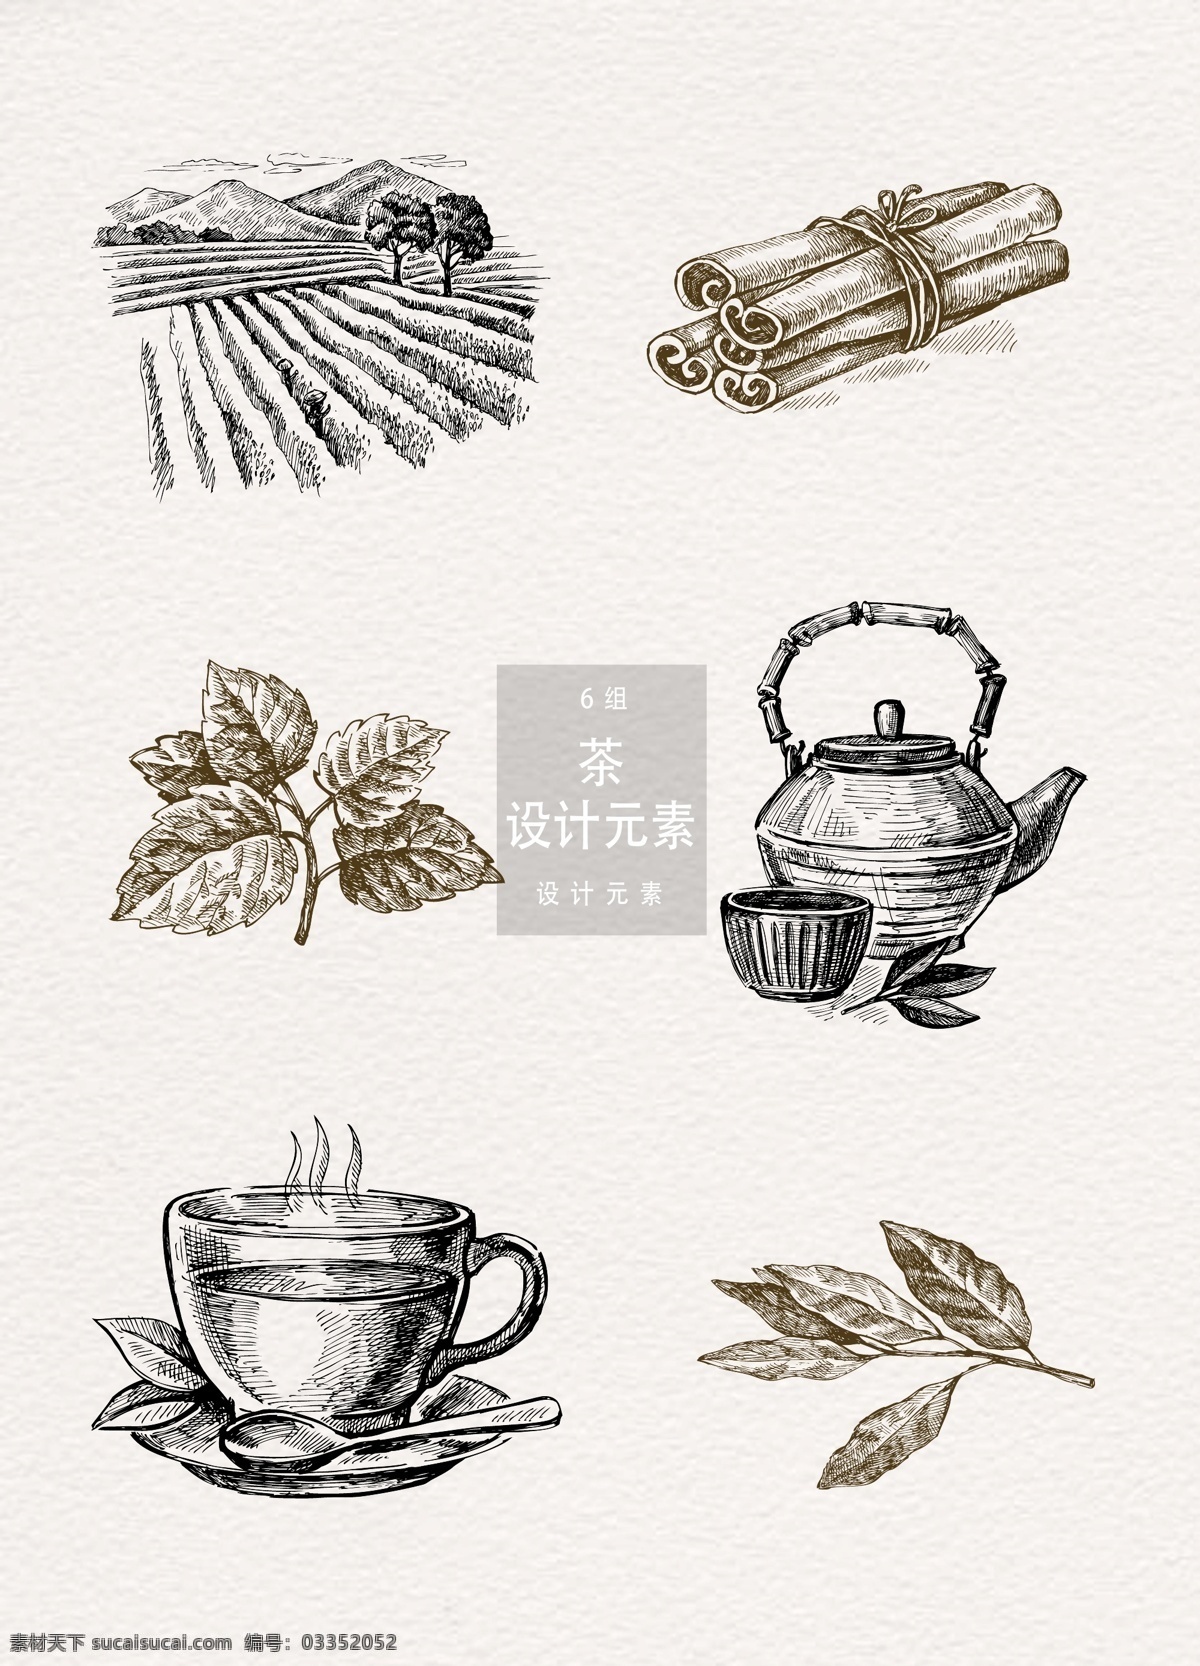 手绘 茶饮 茶叶 元素 茶壶 茶道 茶杯 下午茶 手绘茶饮 茶 茶元素 设计元素 香草 茶园